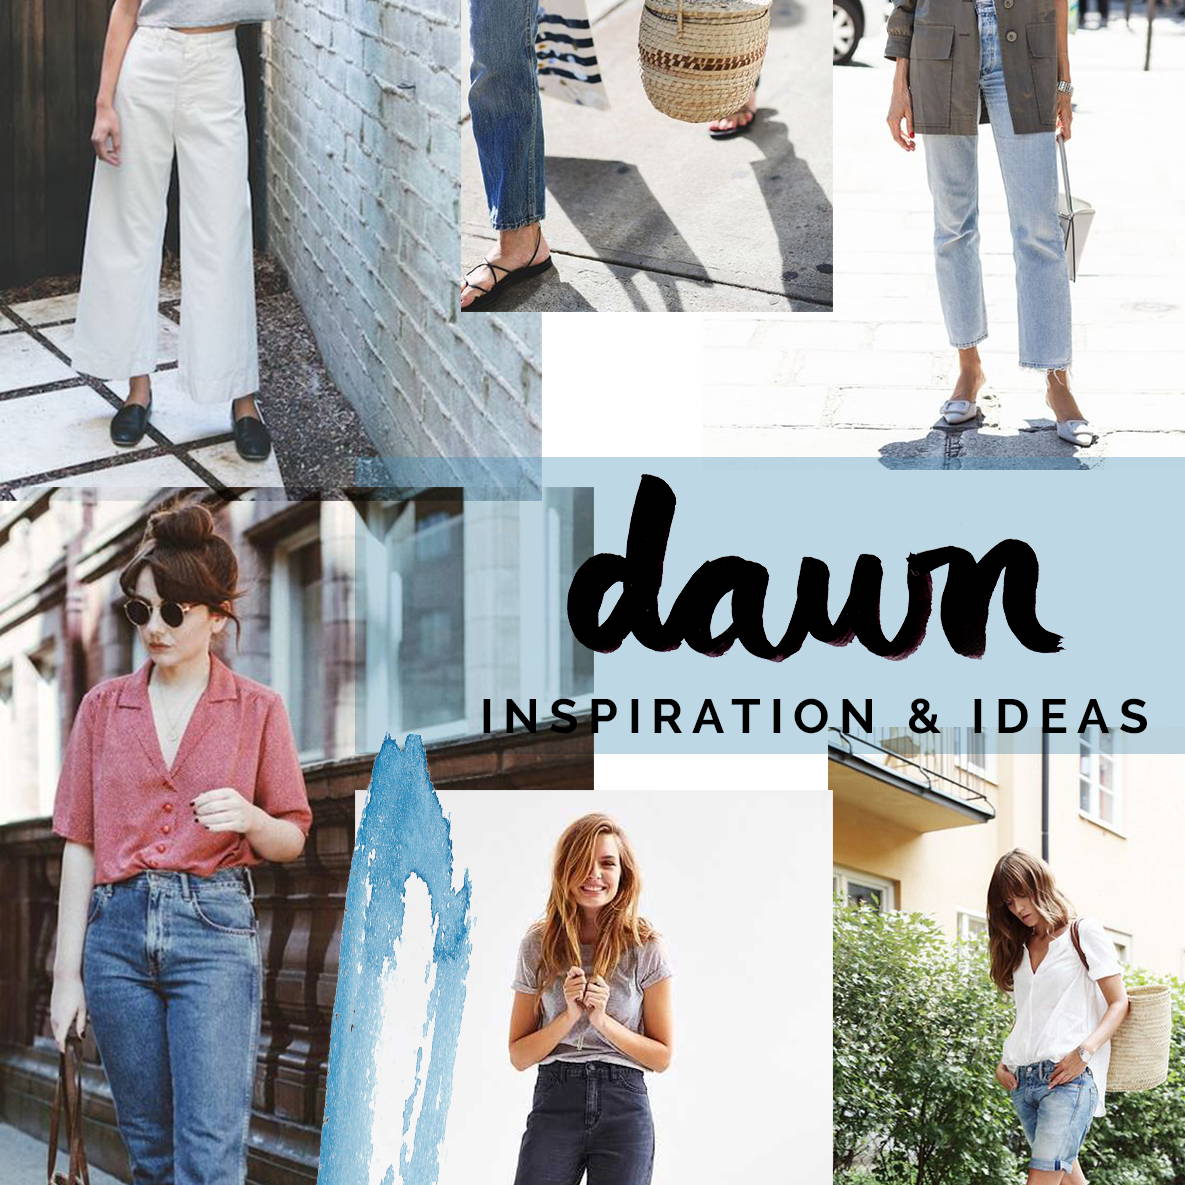 Dawn Inspiration & Ideas